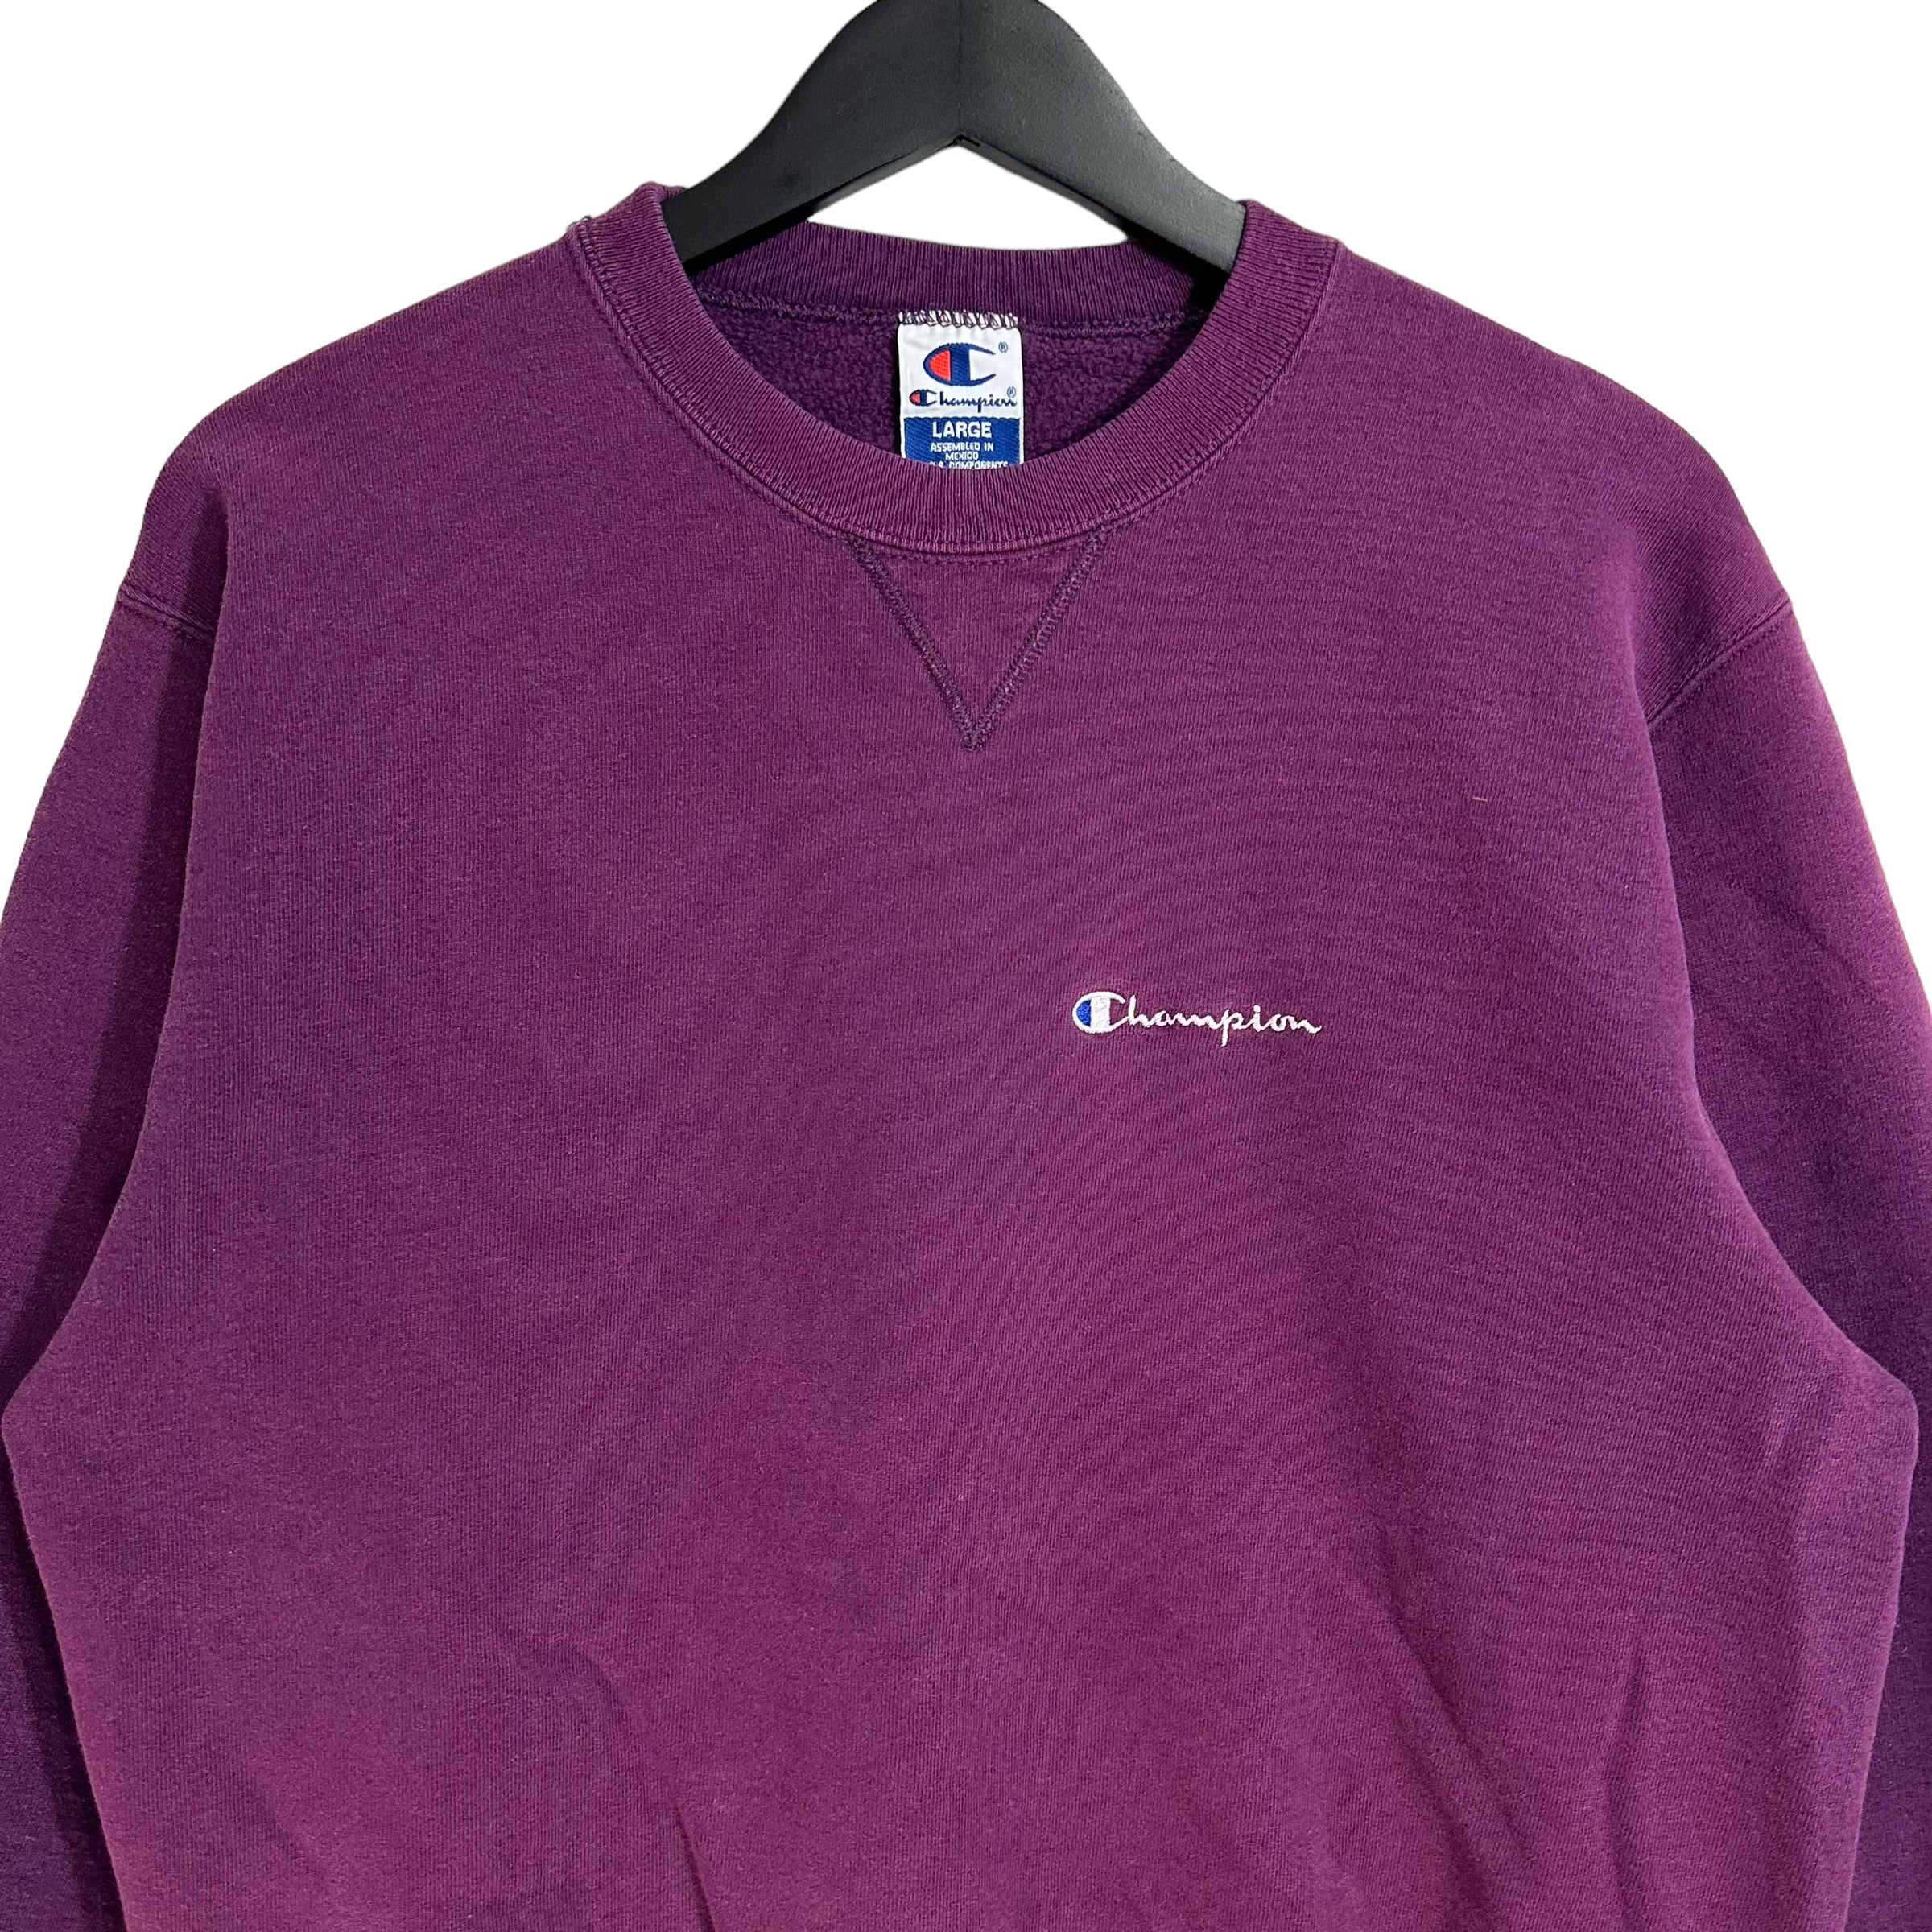 Vintage Champion Embroidered Purple Crewneck 90s